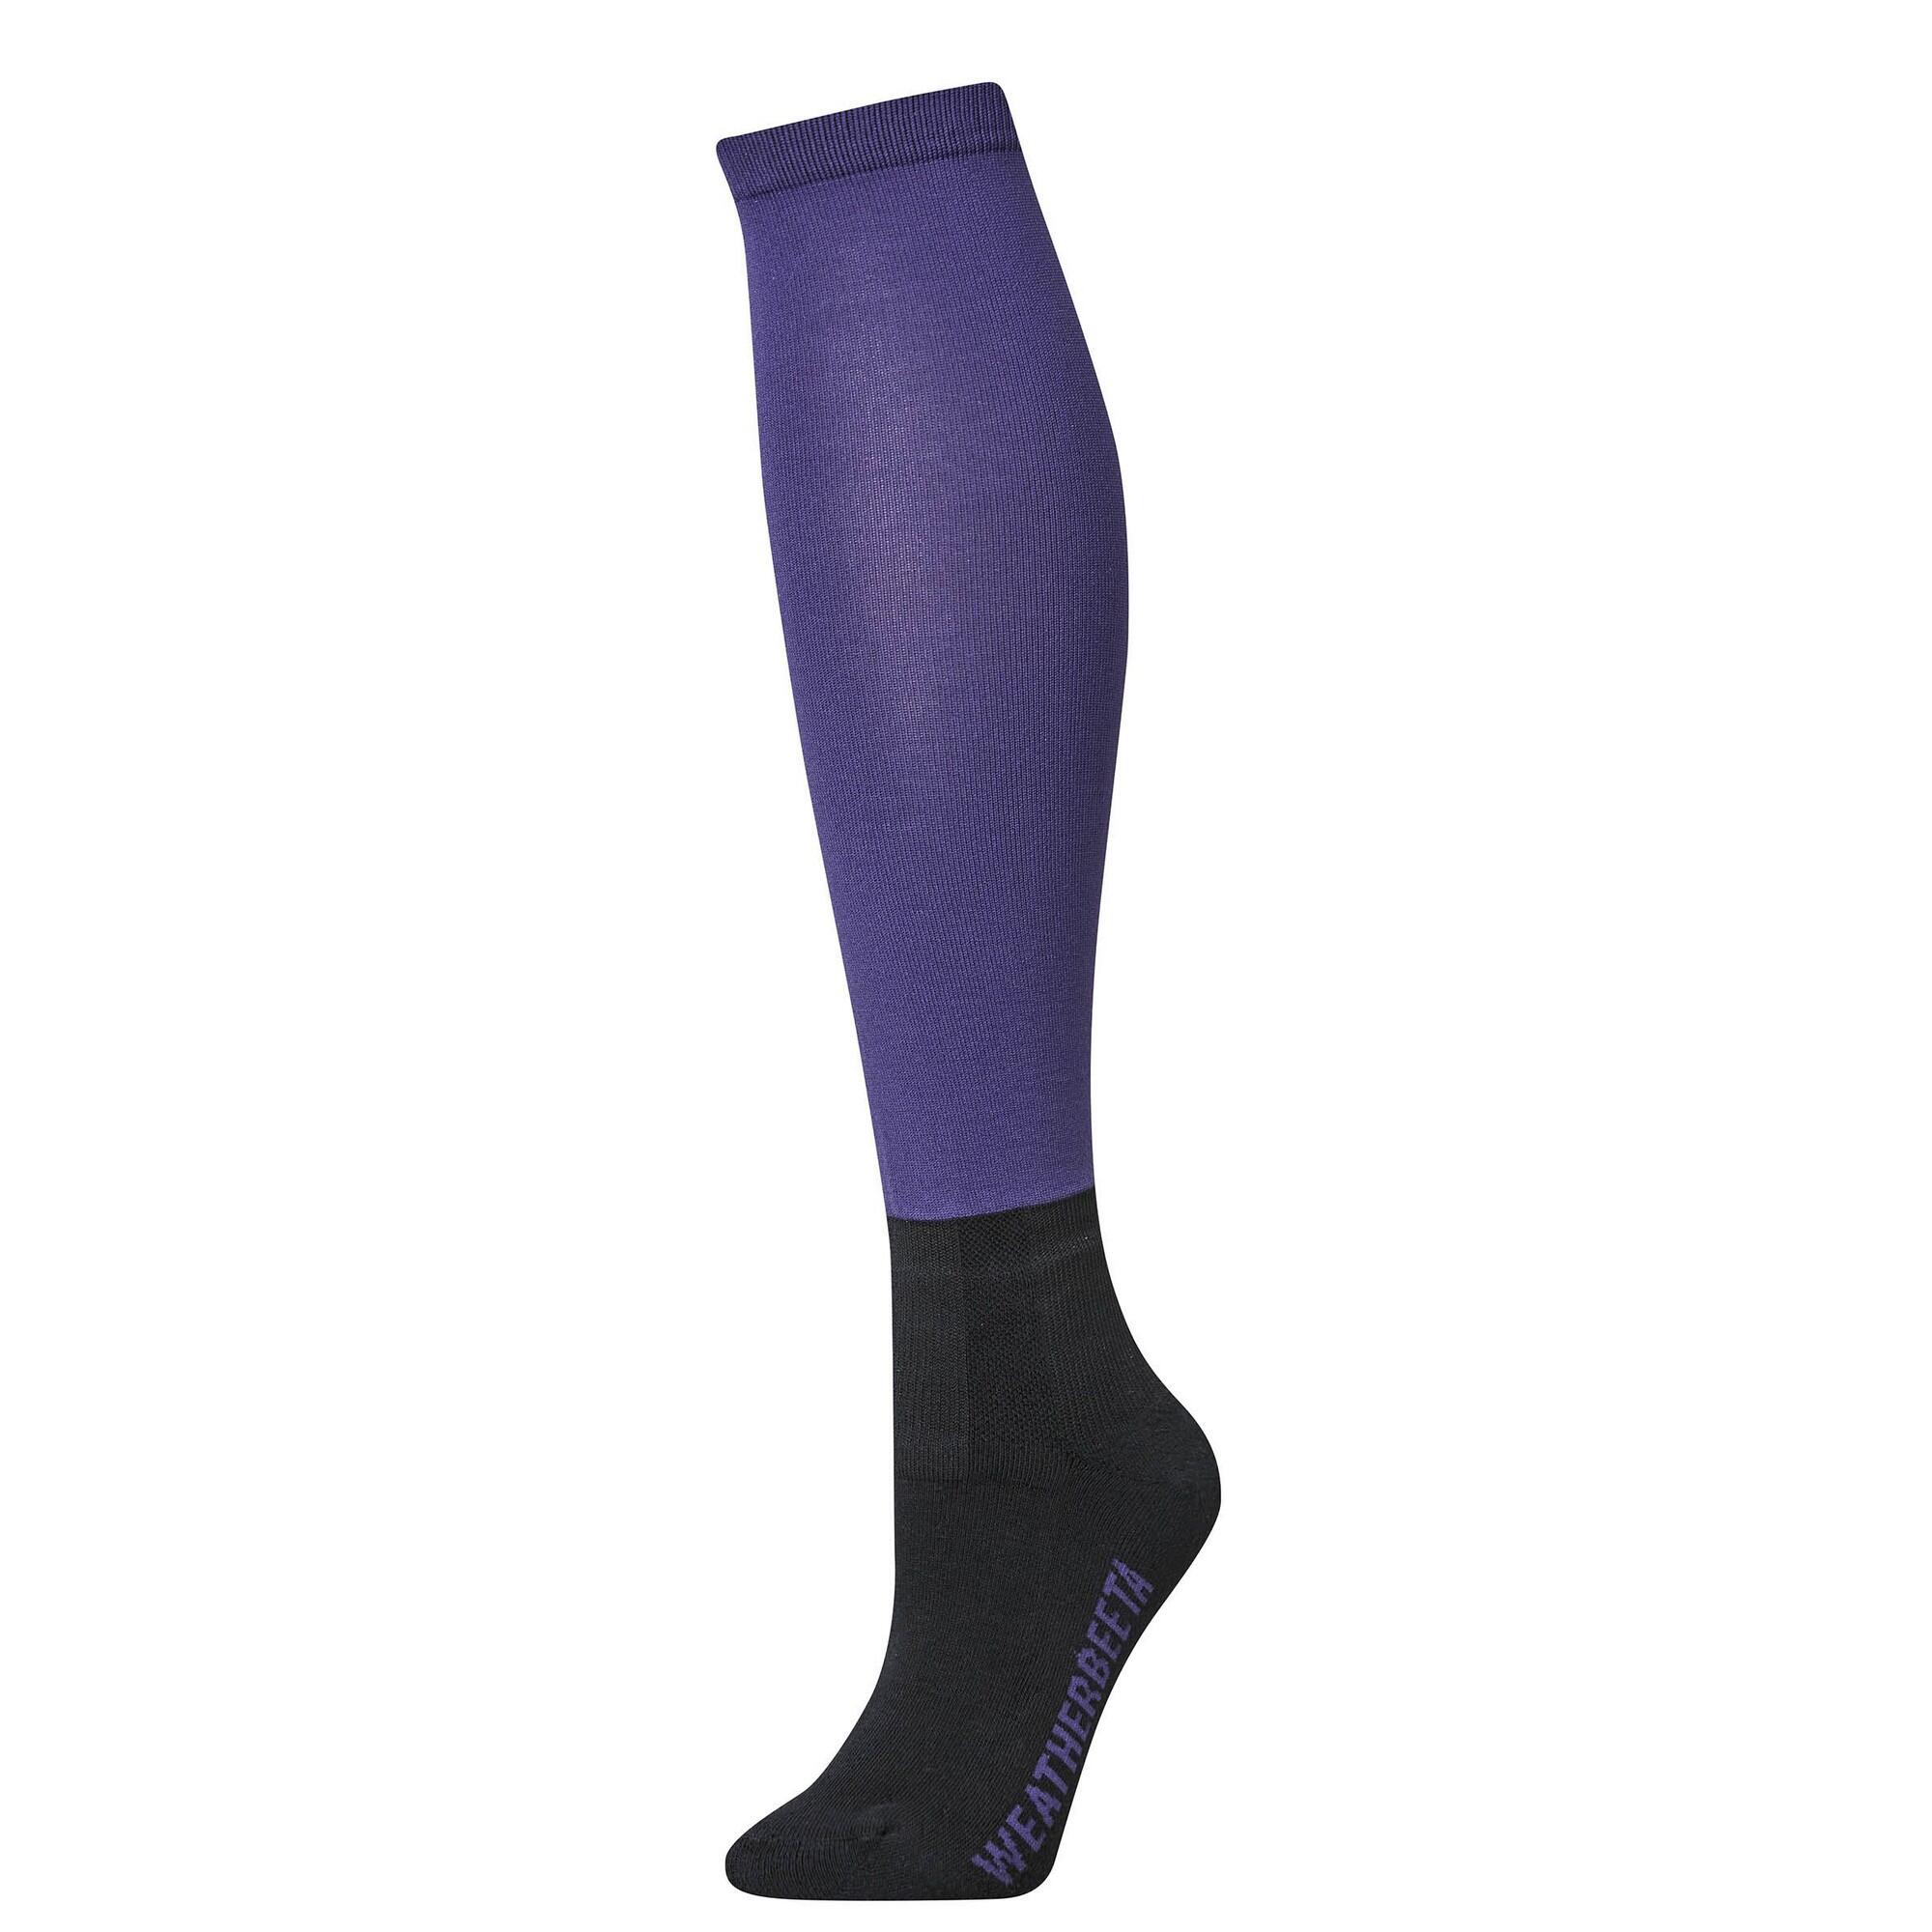 WEATHERBEETA Unisex Adult Prime Knee High Socks (Violet)